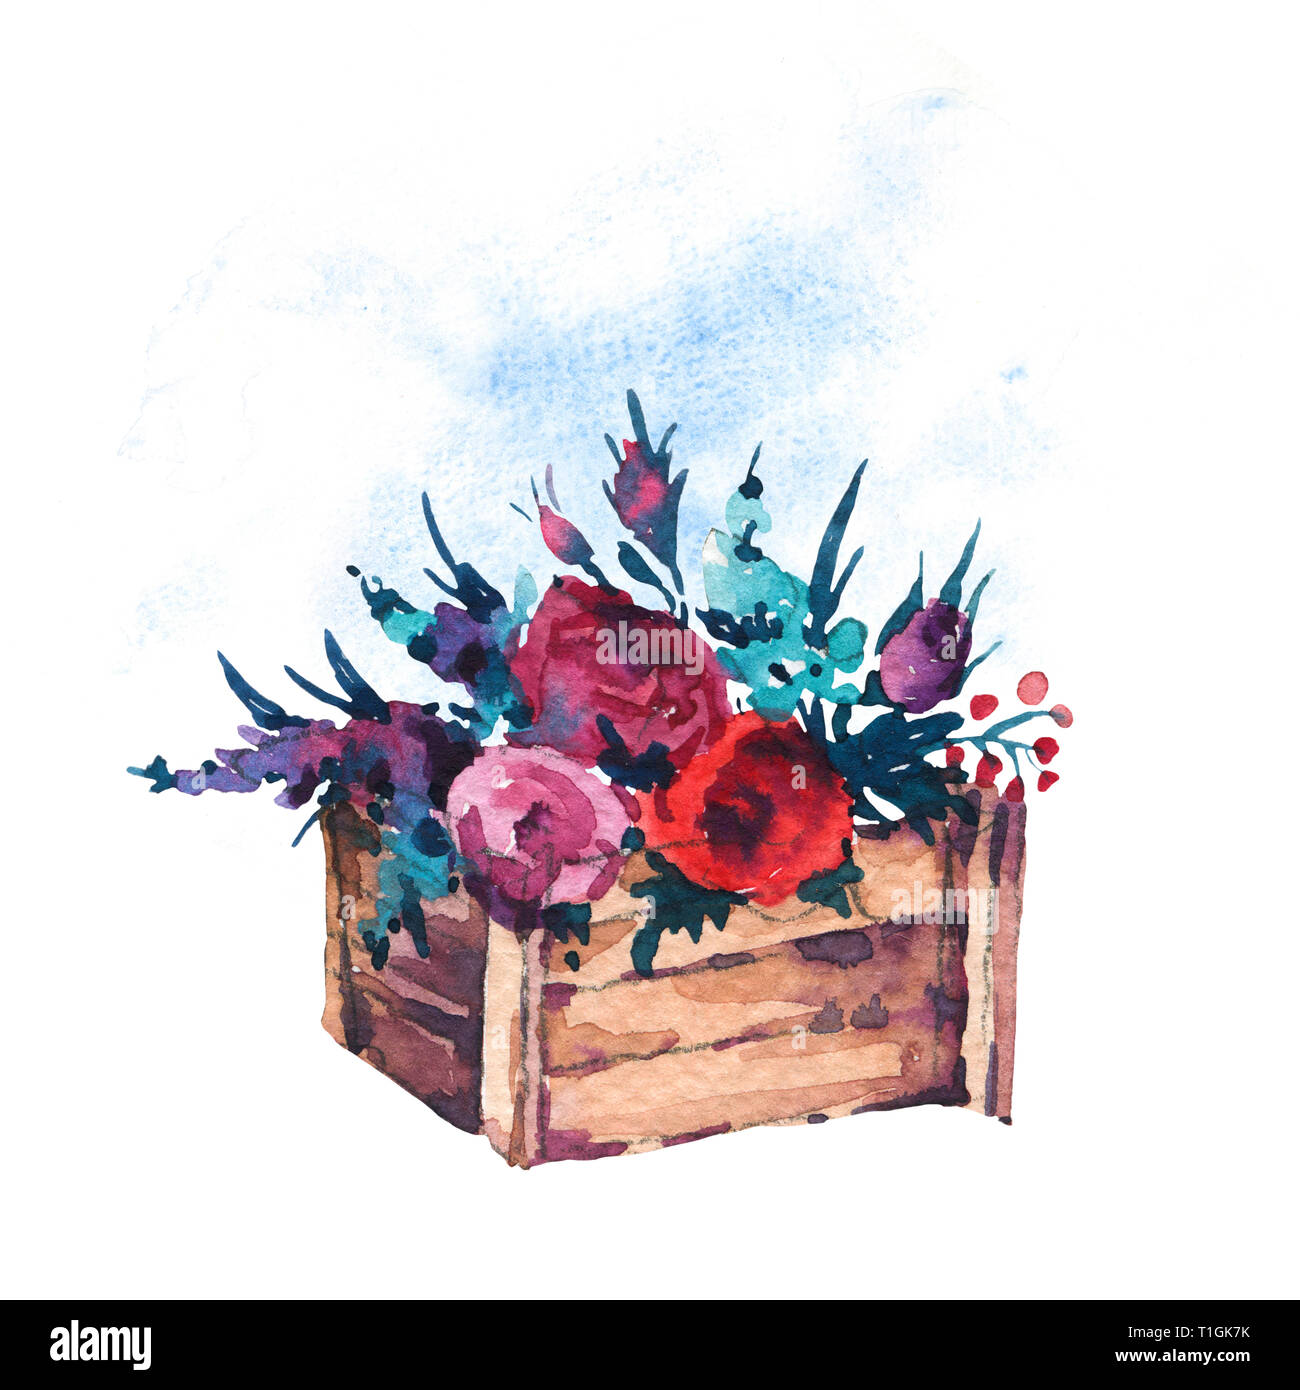 Boîte en bois peint à la main à l'aquarelle avec des fleurs, des roses rouges, des fleurs sauvages isolé sur fond blanc. Illustrations de style Boho Chic, message d'accueil naturel Banque D'Images